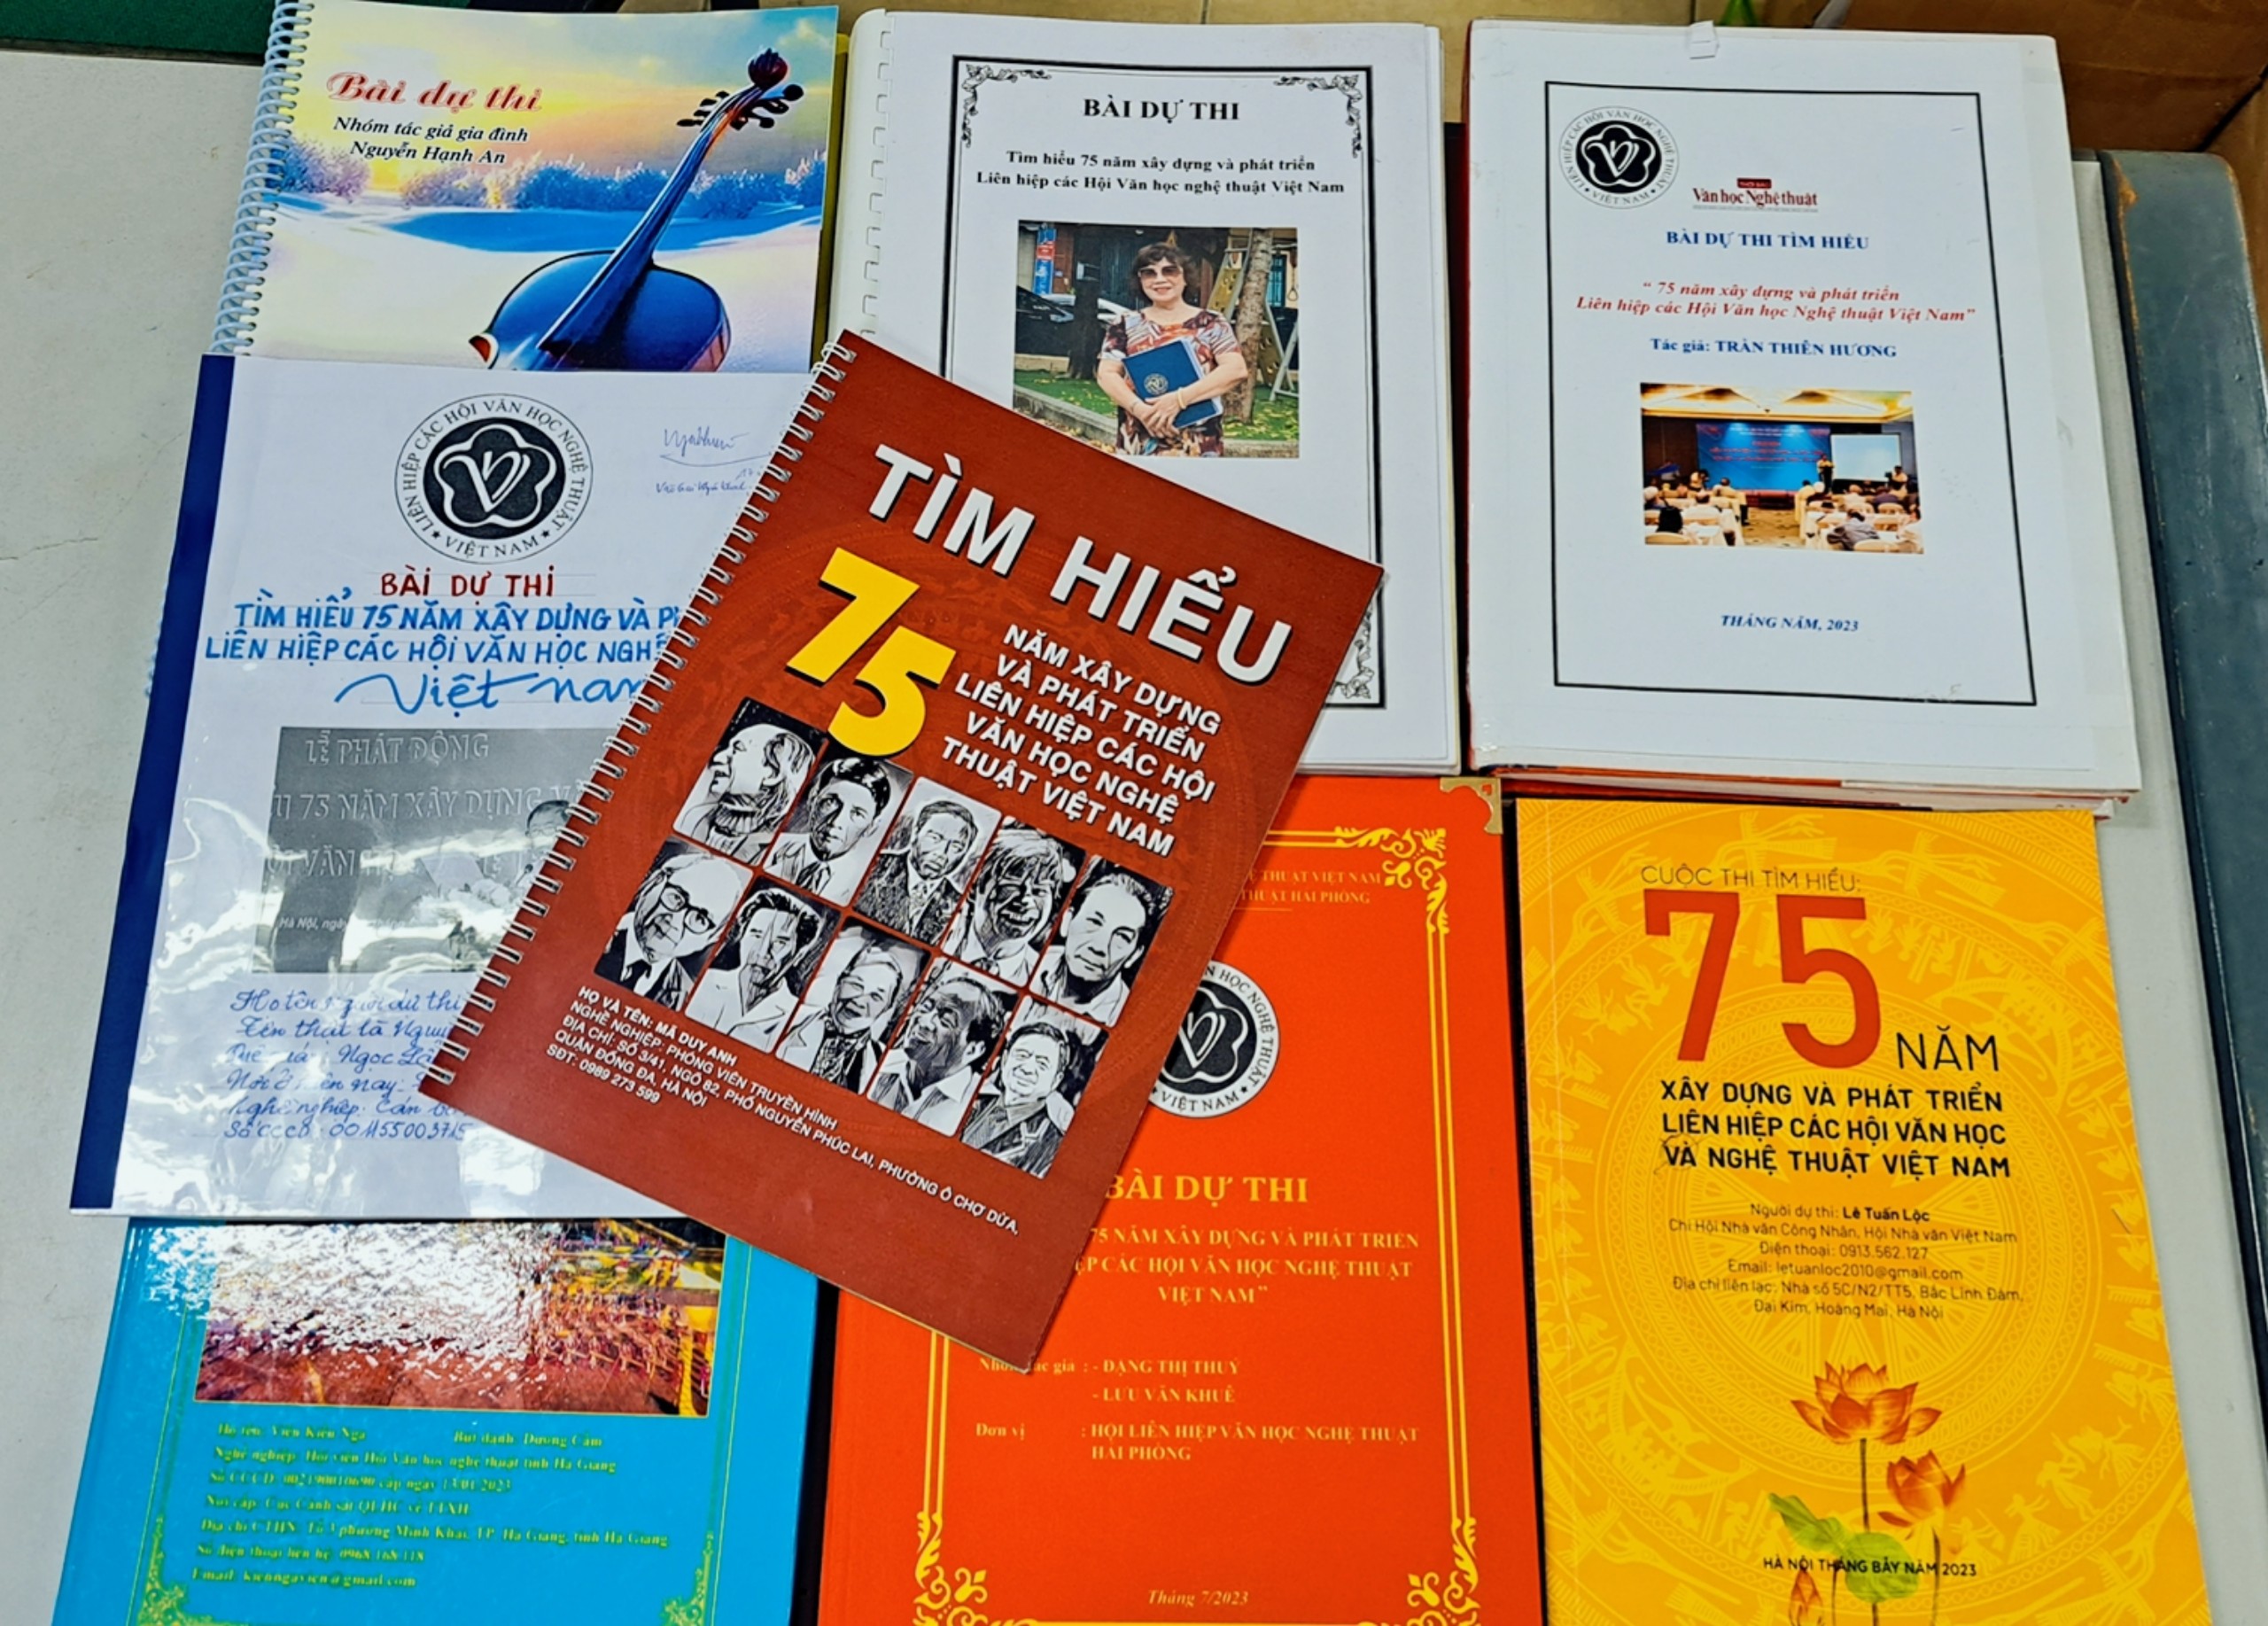 (Ảnh) Những dấu ấn đặc biệt của cuộc thi Tìm hiểu 75 năm xây dựng và phát triển Liên hiệp các Hội Văn học nghệ thuật Việt Nam - 5